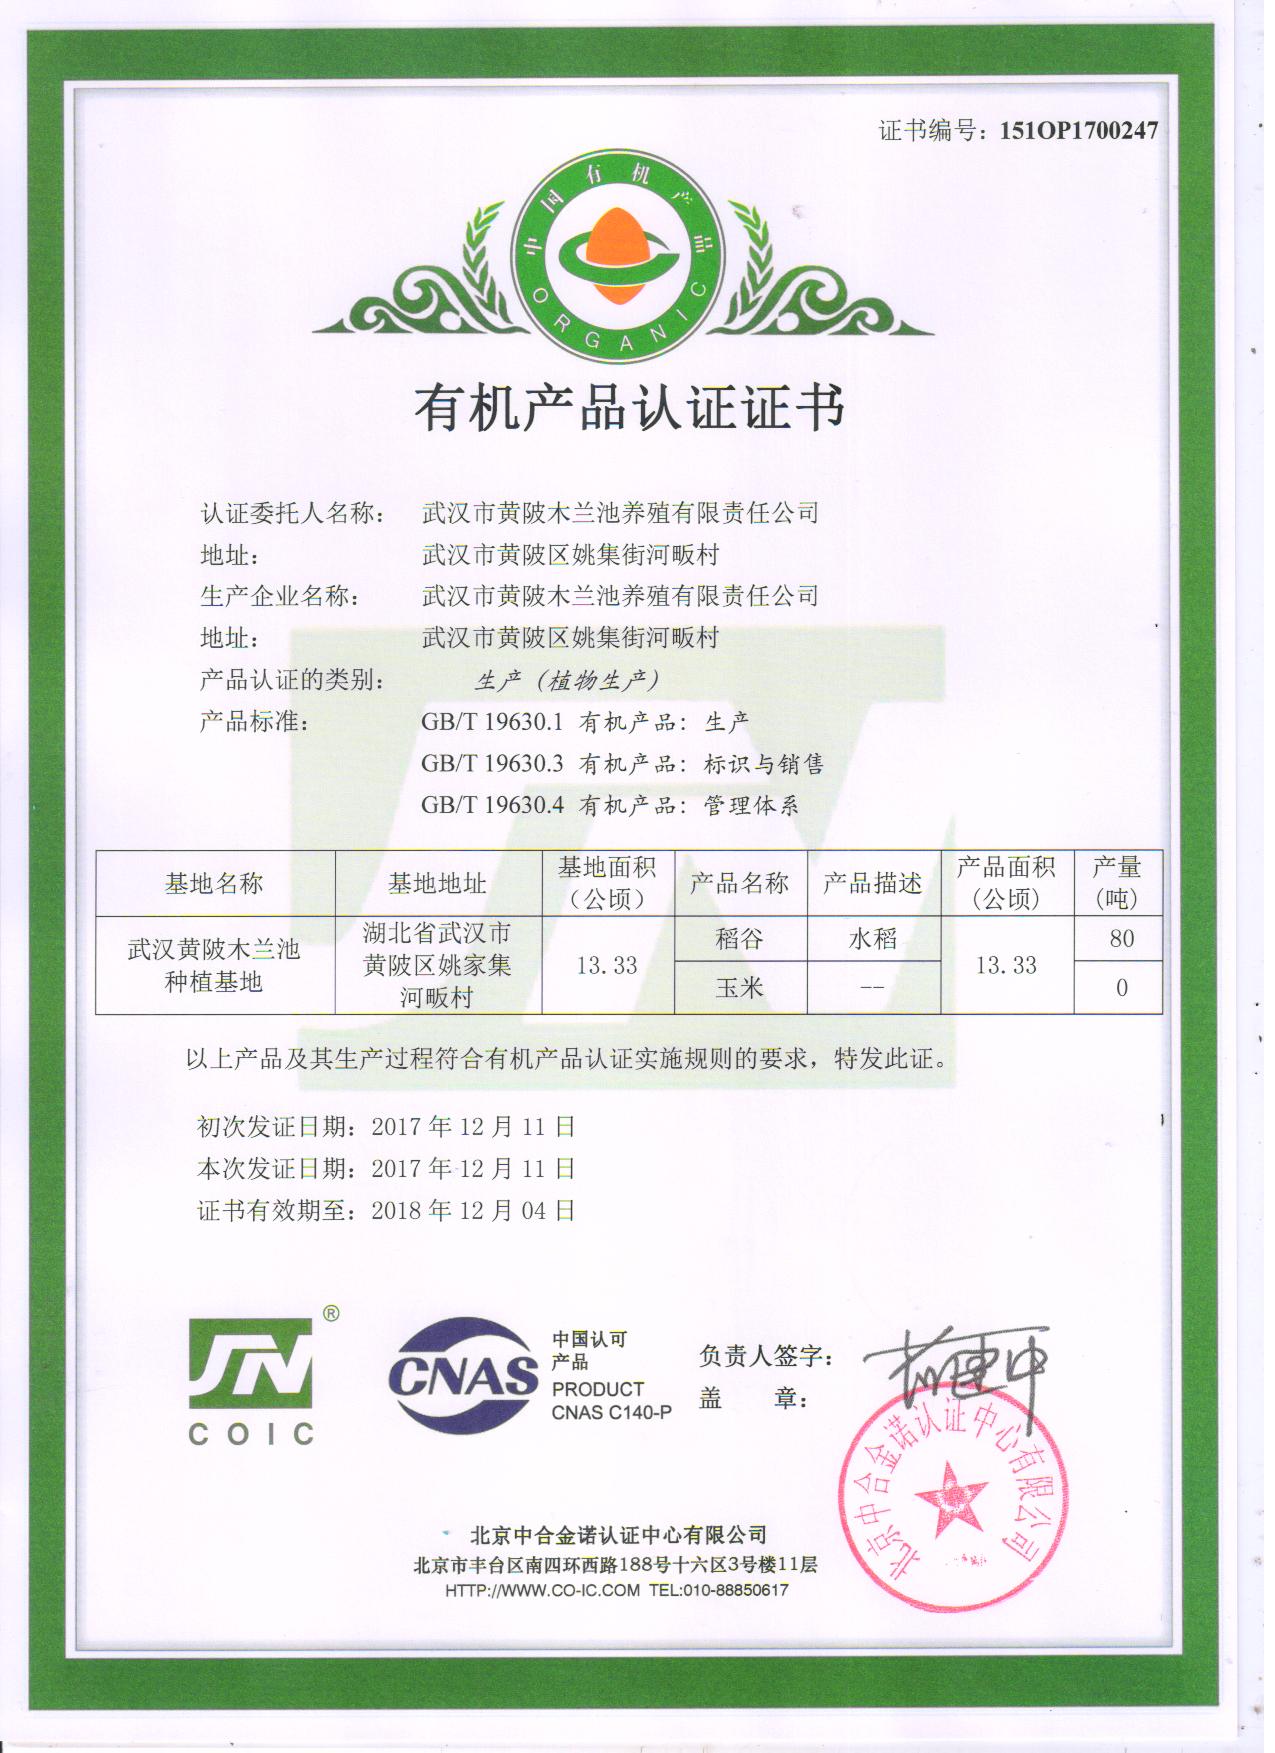 武汉黄陂木兰池种植基地有机产品认证证书